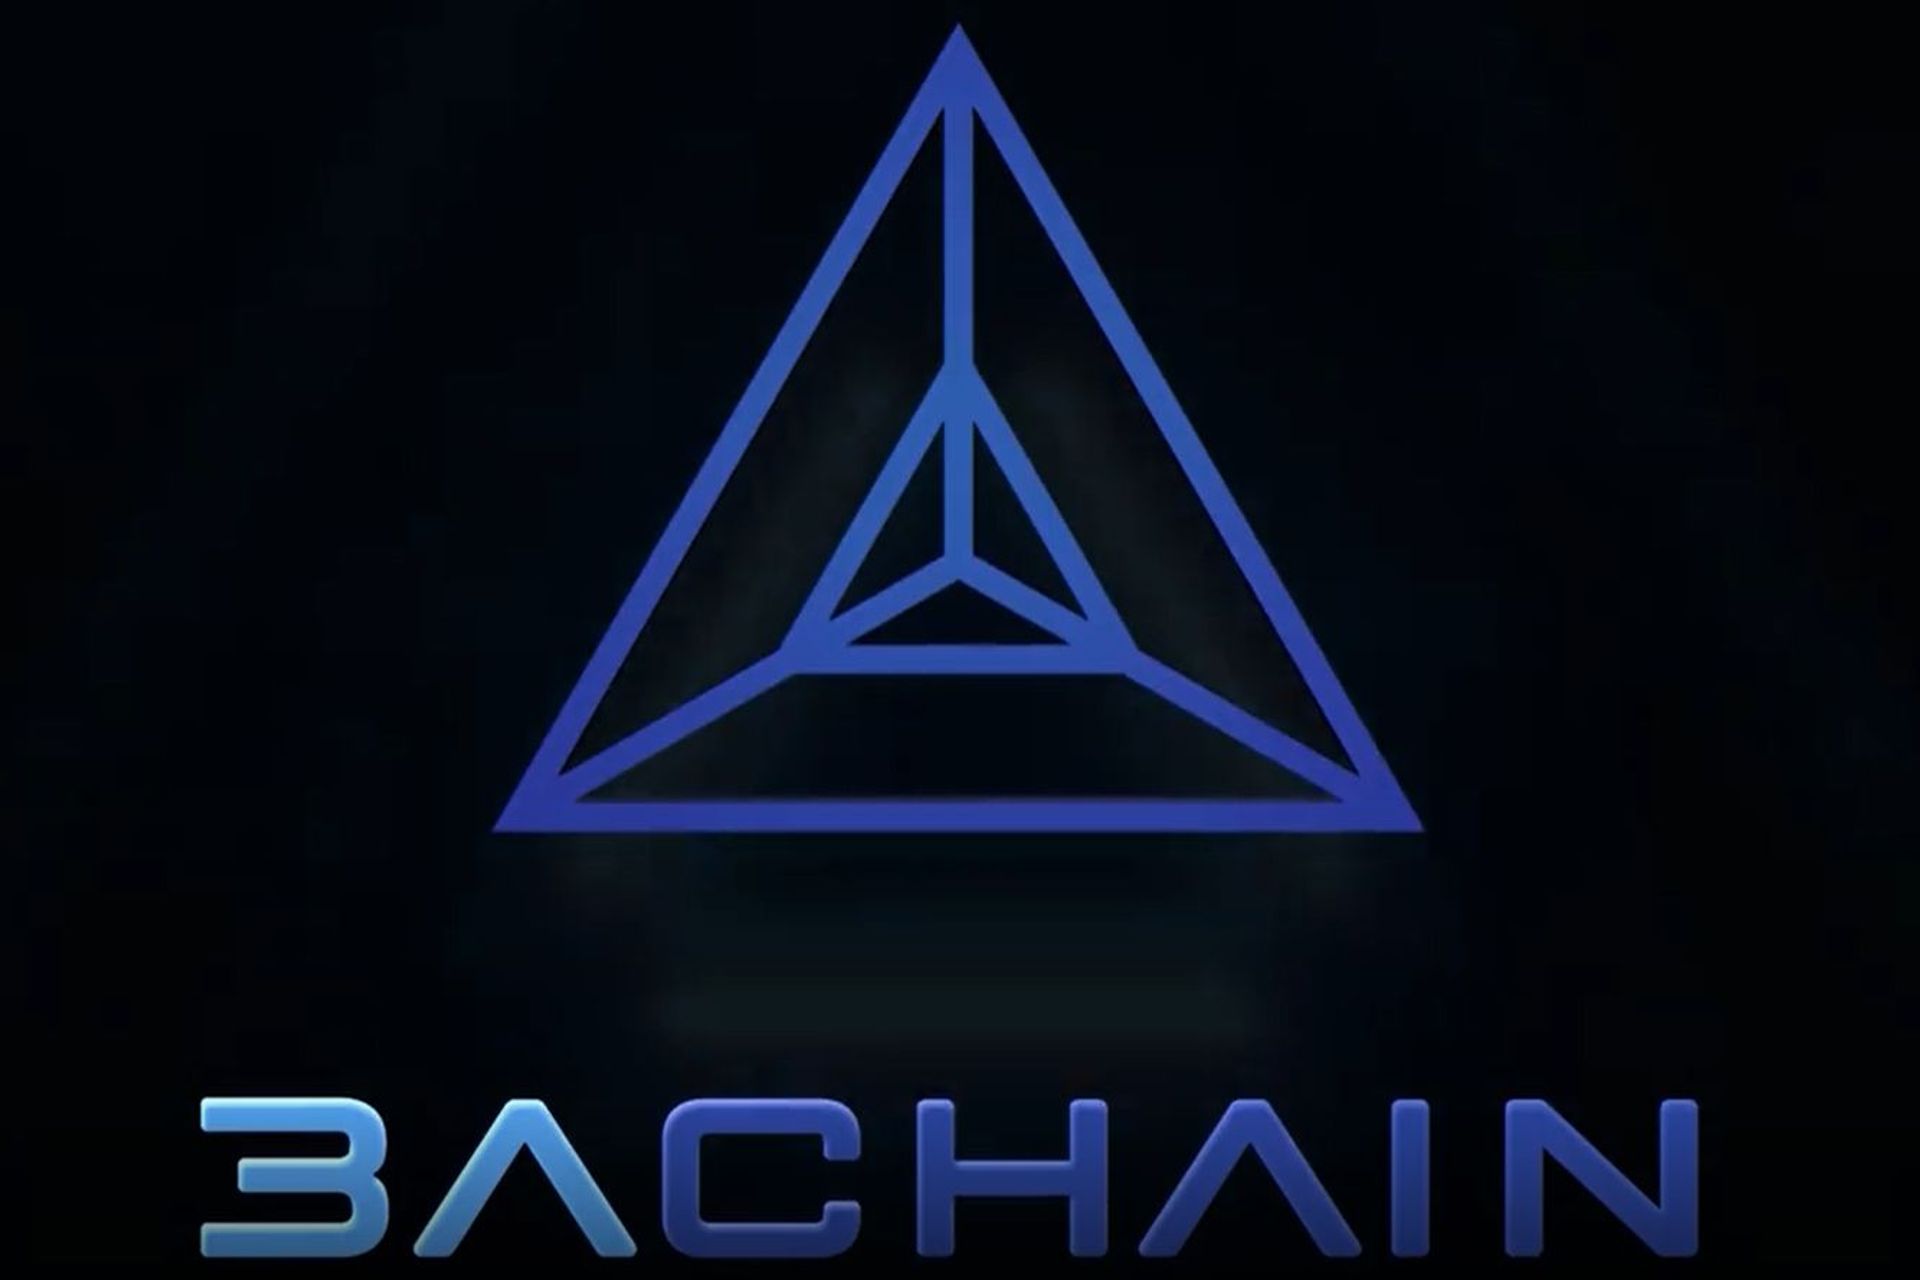 Logotypen til A3chain-blokkjeden lansert av byen Lugano